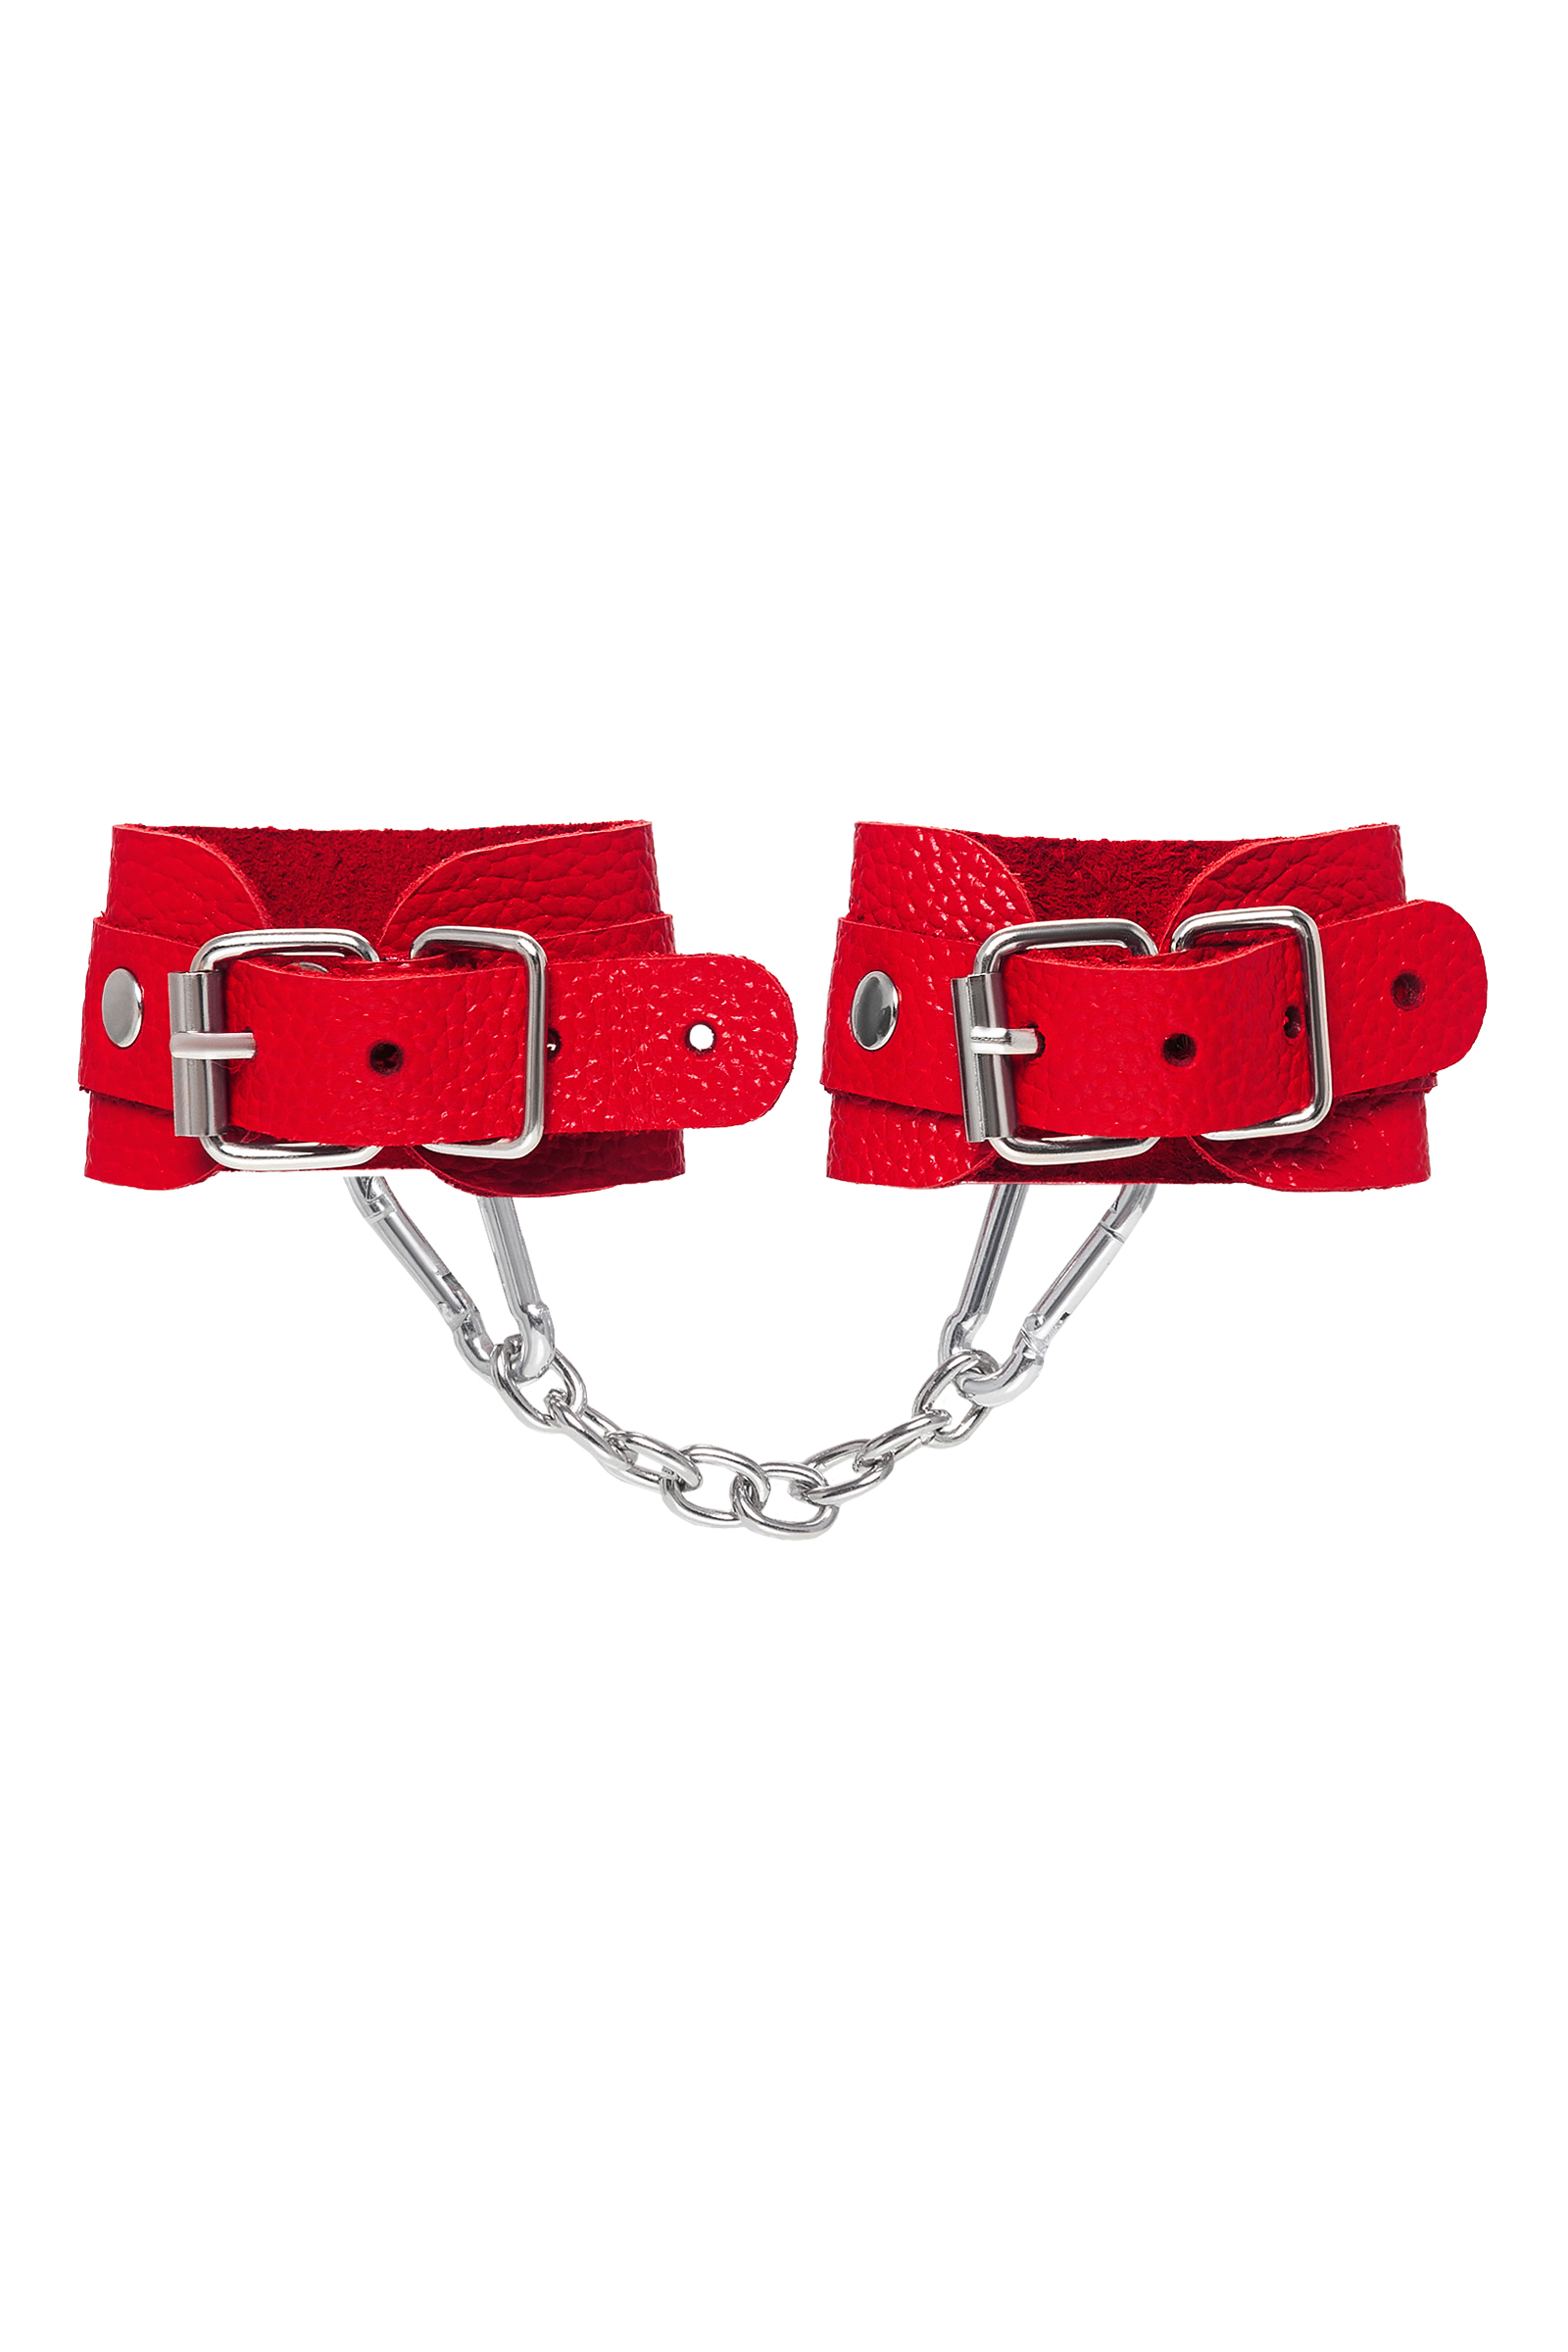 Наручники-браслеты кожаные Pecado BDSM мини со скруглёнными углами красные